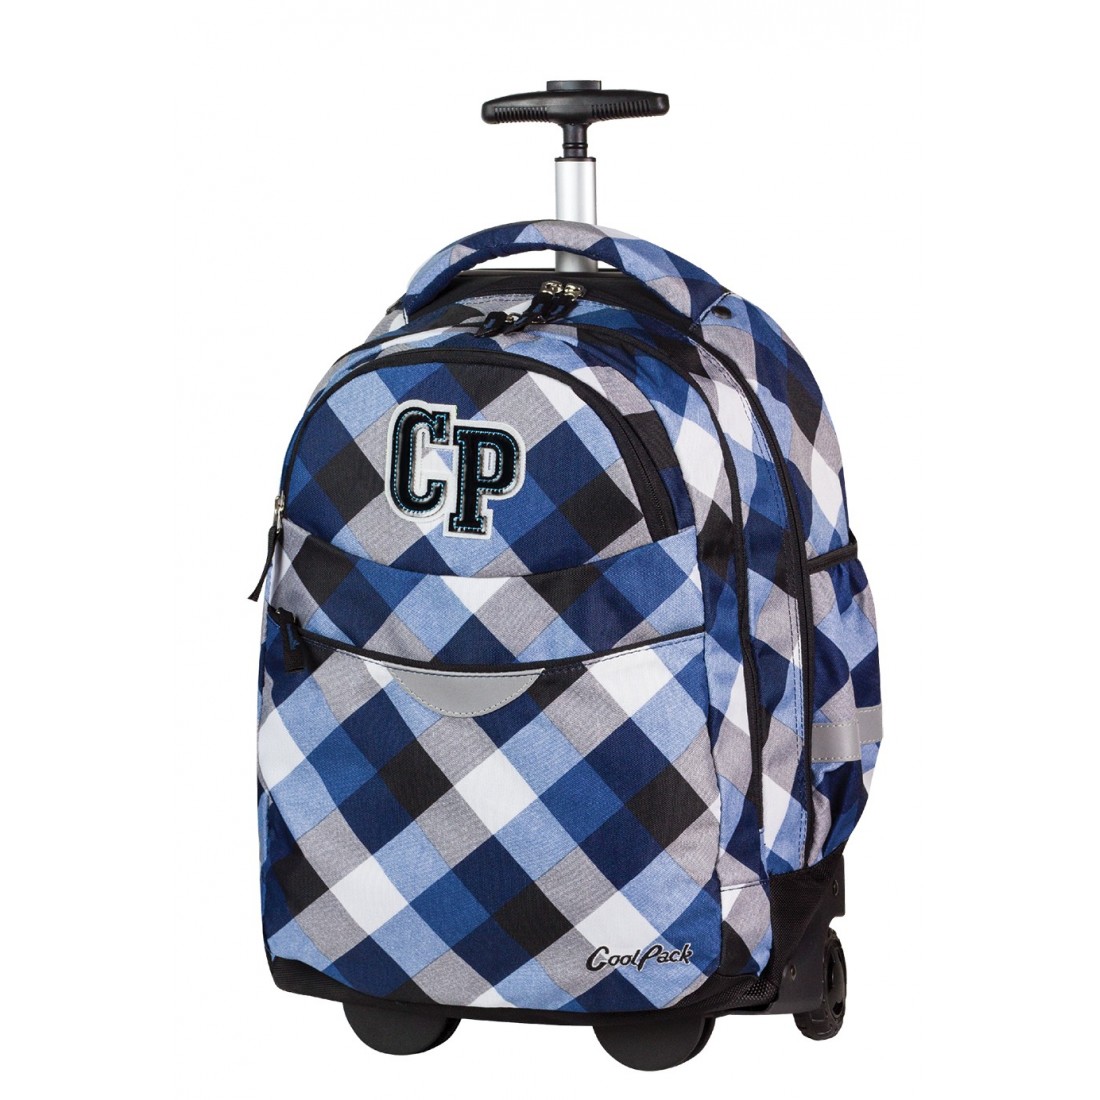 Plecak na kółkach CoolPack CP niebieski w kratkę dla chłopca lub dziewczynki RAPID CAMBRIDGE CP 466